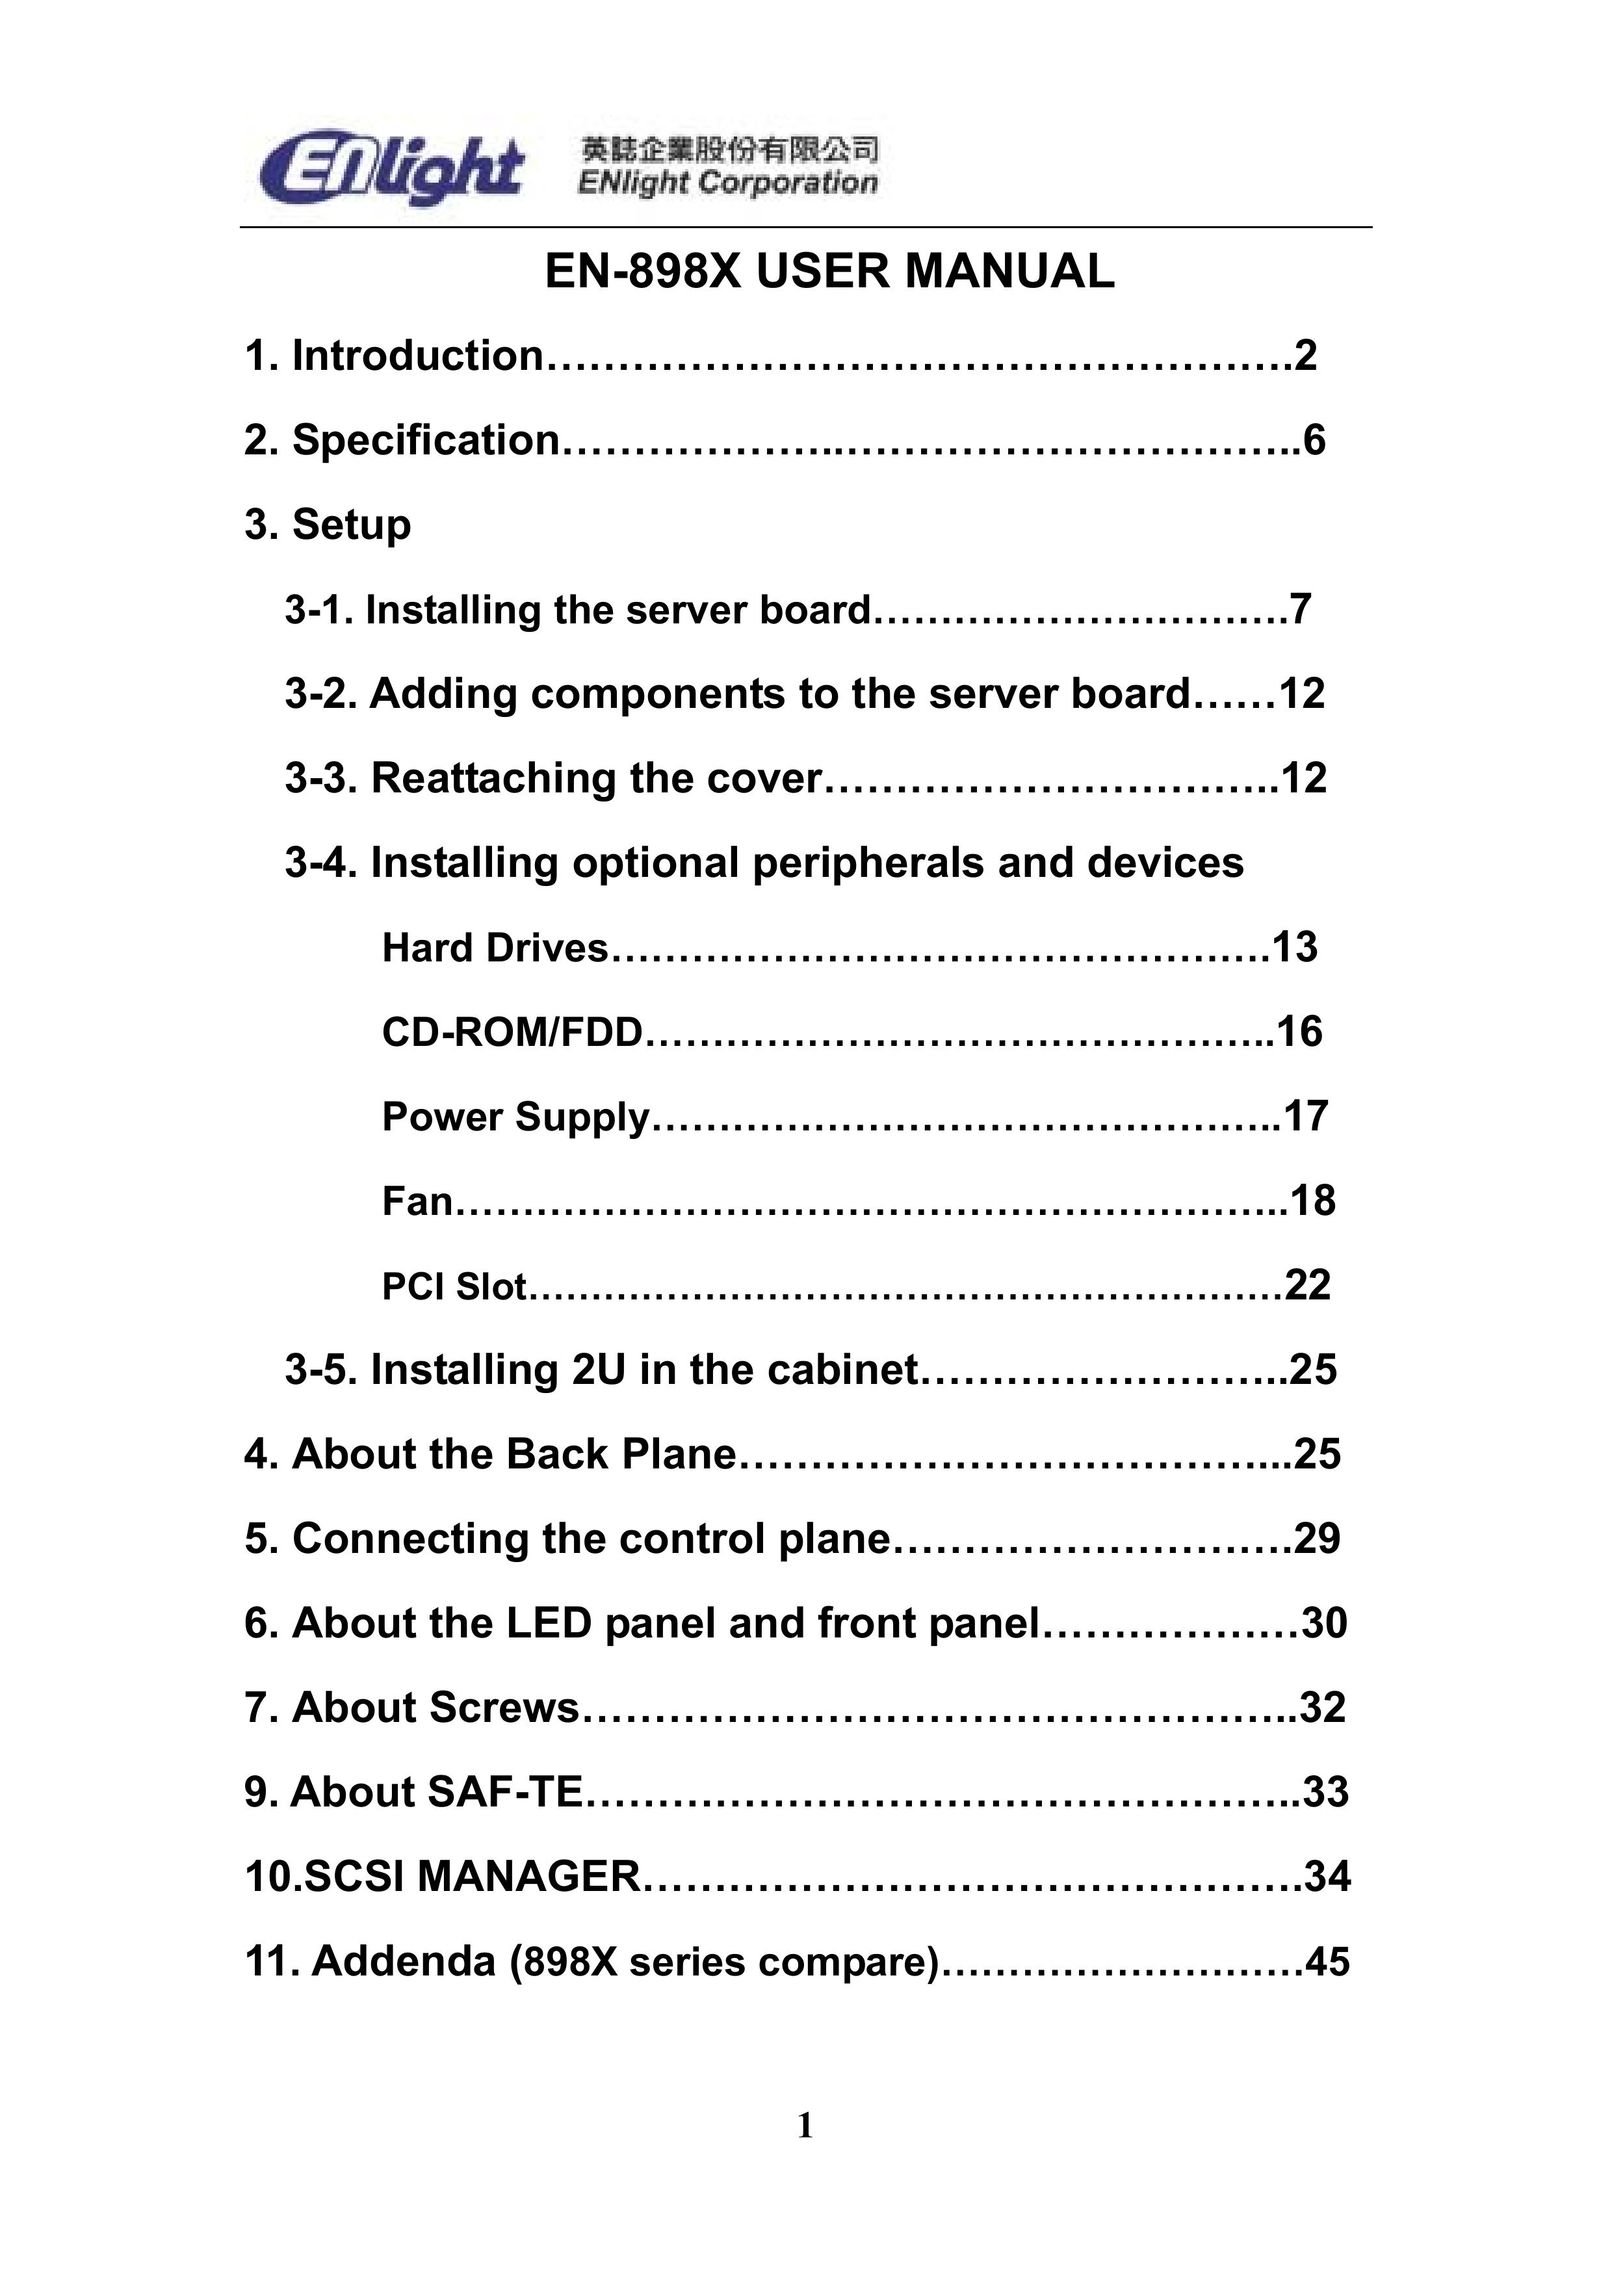 Enlight EN-898X Server User Manual